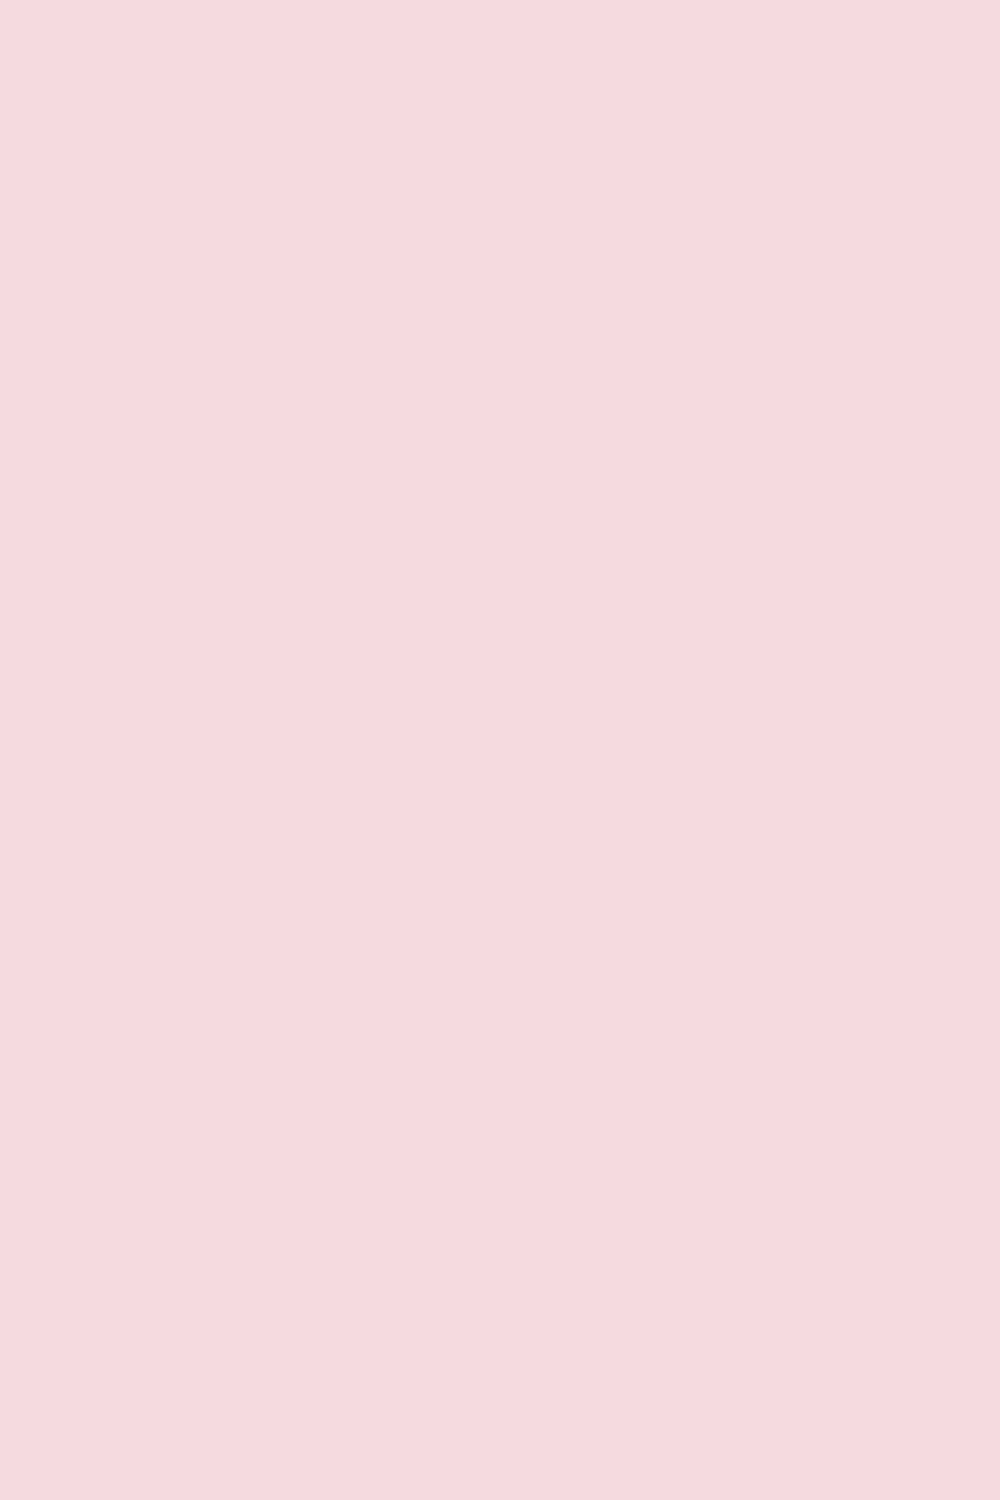 Pink Background Pastel gambar ke 8